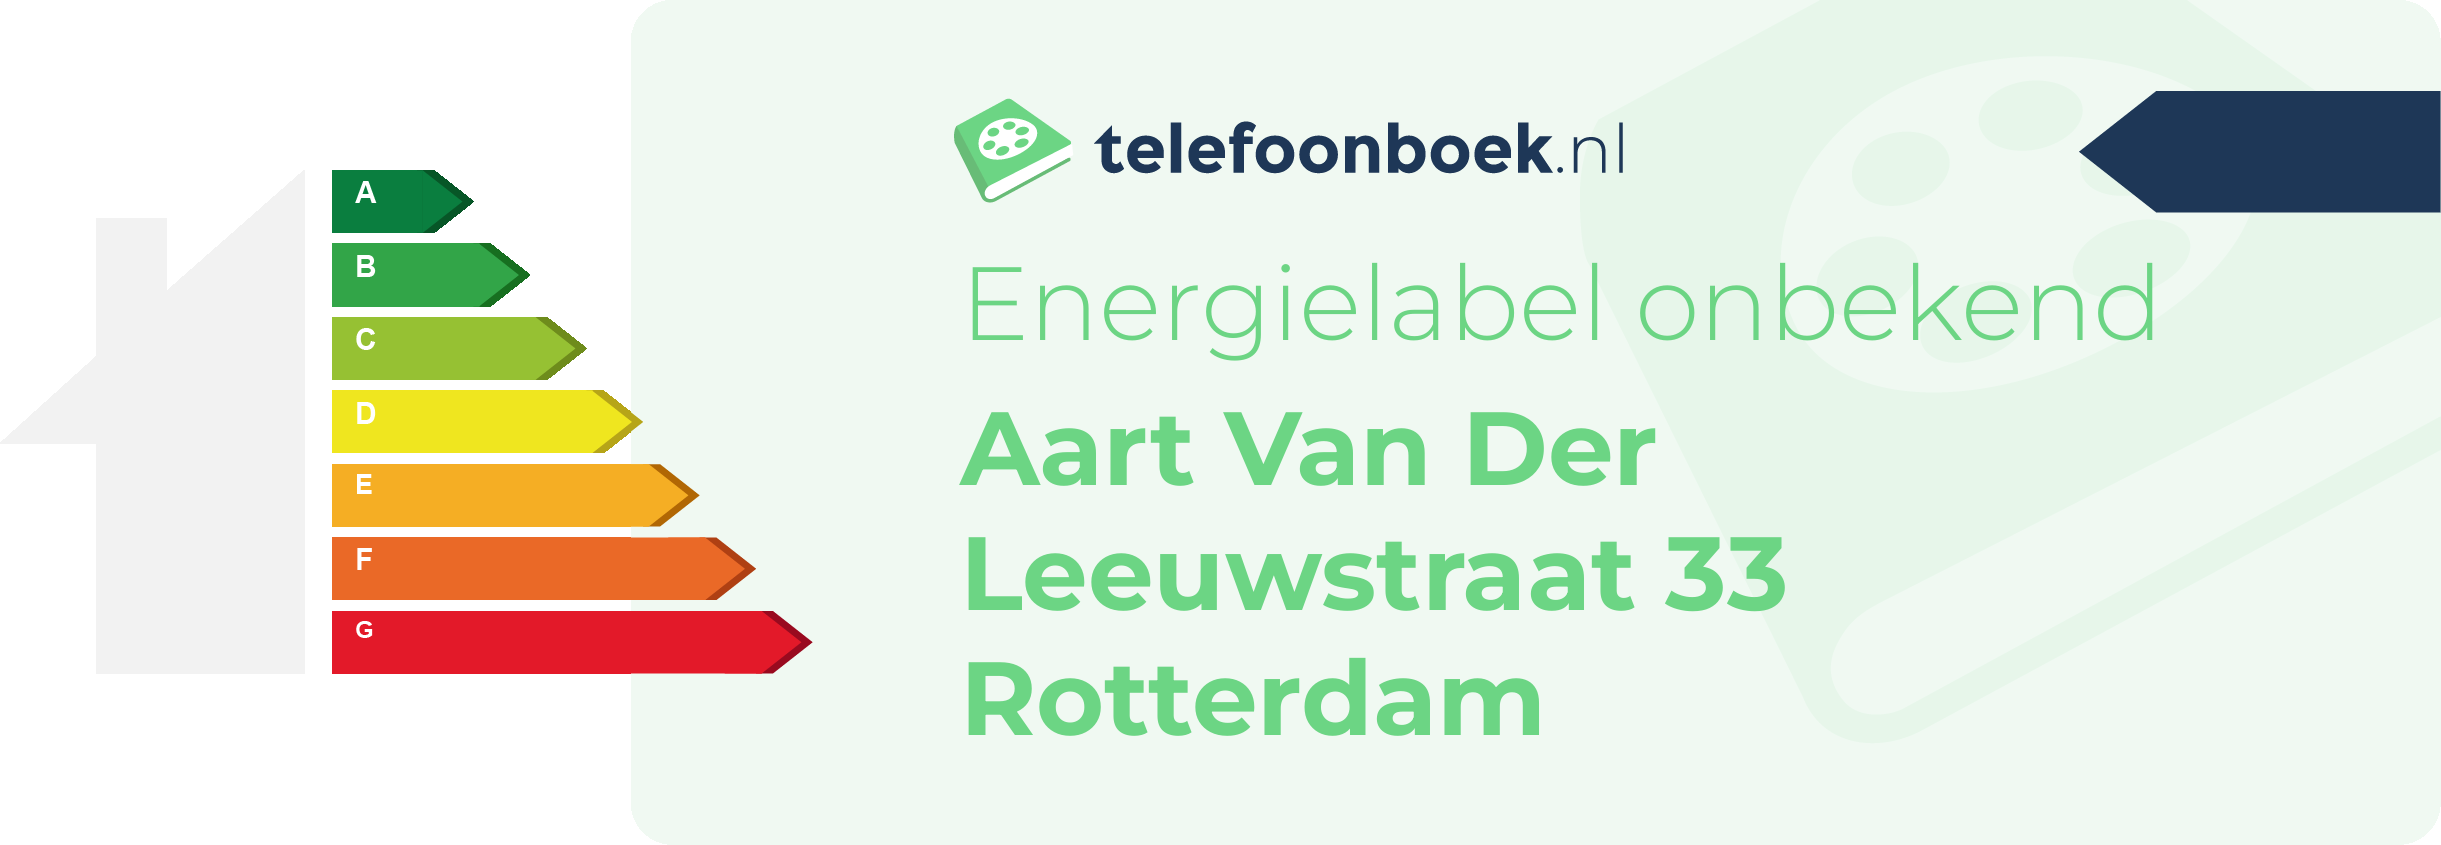 Energielabel Aart Van Der Leeuwstraat 33 Rotterdam